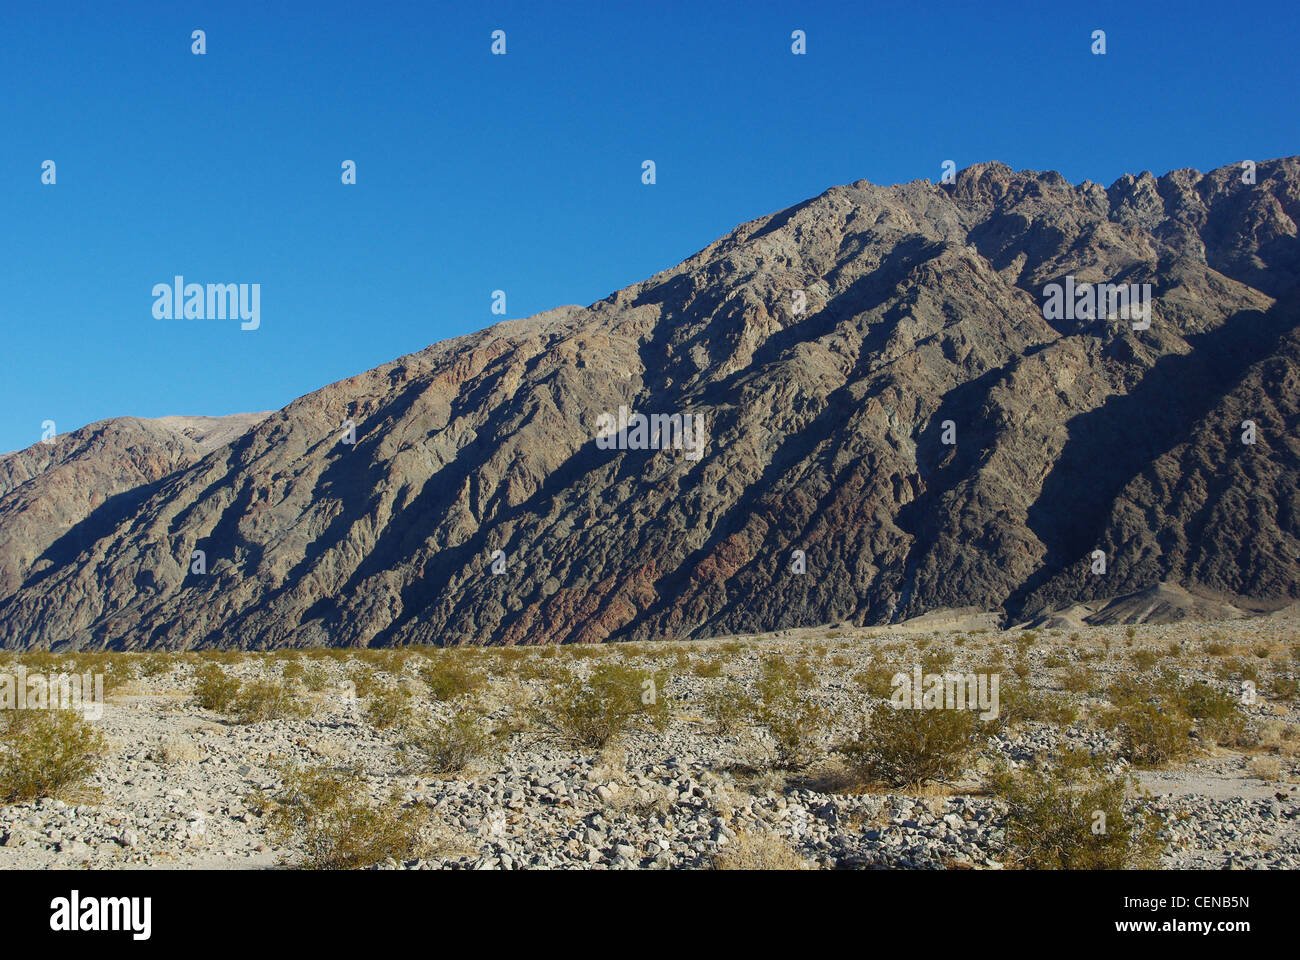 Désert et montagnes impressionnantes, la Death Valley, Californie Banque D'Images